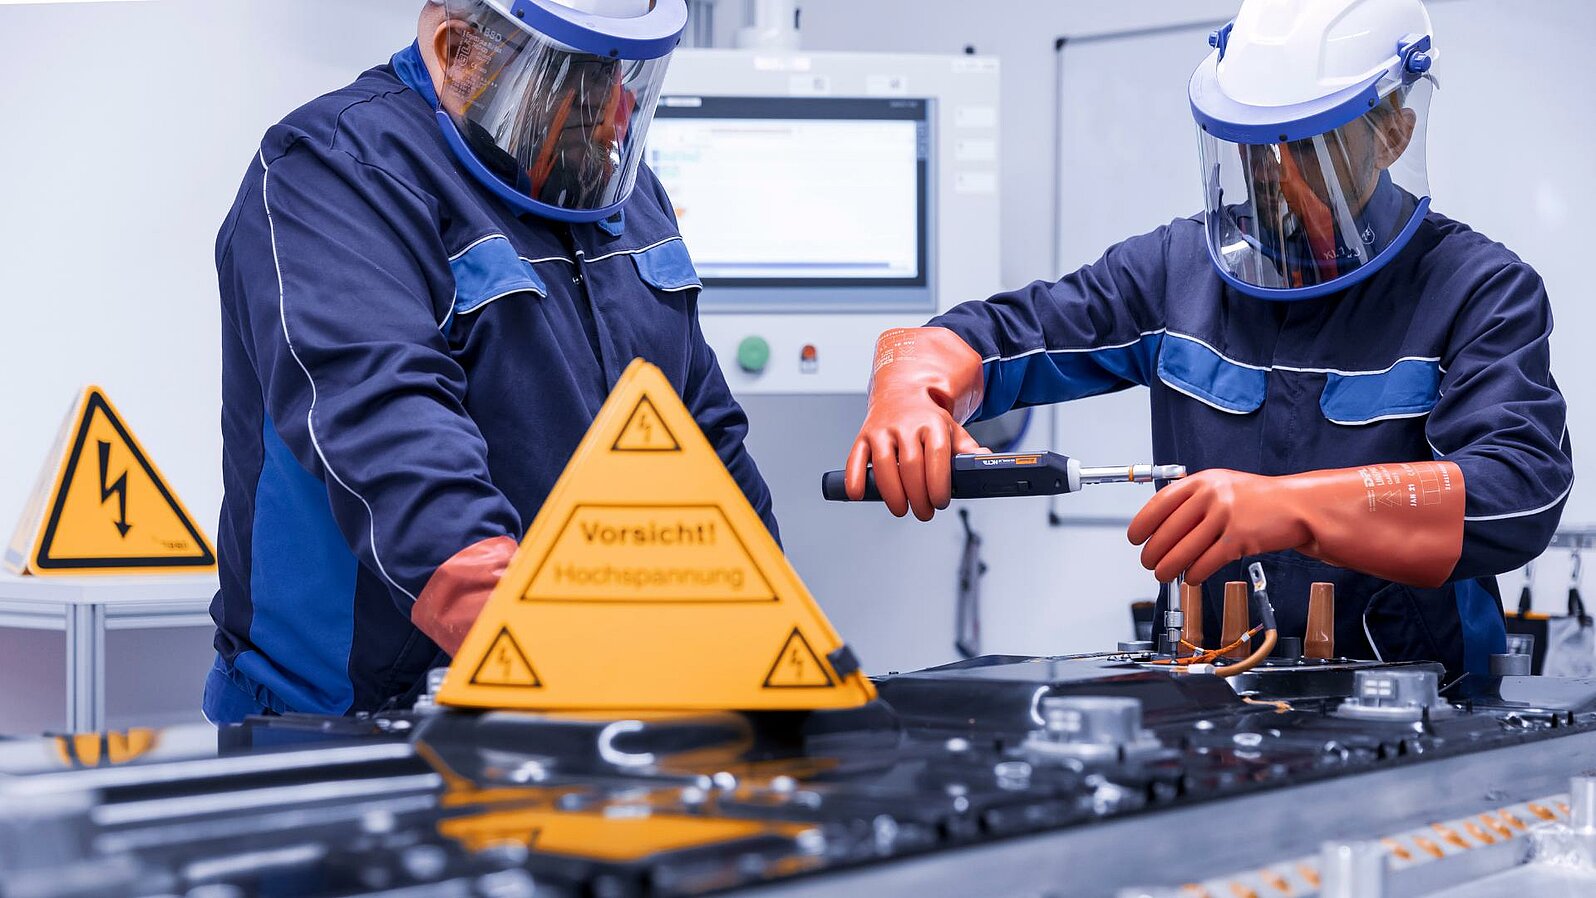 Zwei Leadec-Mitarbeiter in Schutzkleidung bei der Reparatur einer defekten Batterie, vor ihnen ein Warnschild für Arbeiten unter Hochspannung.